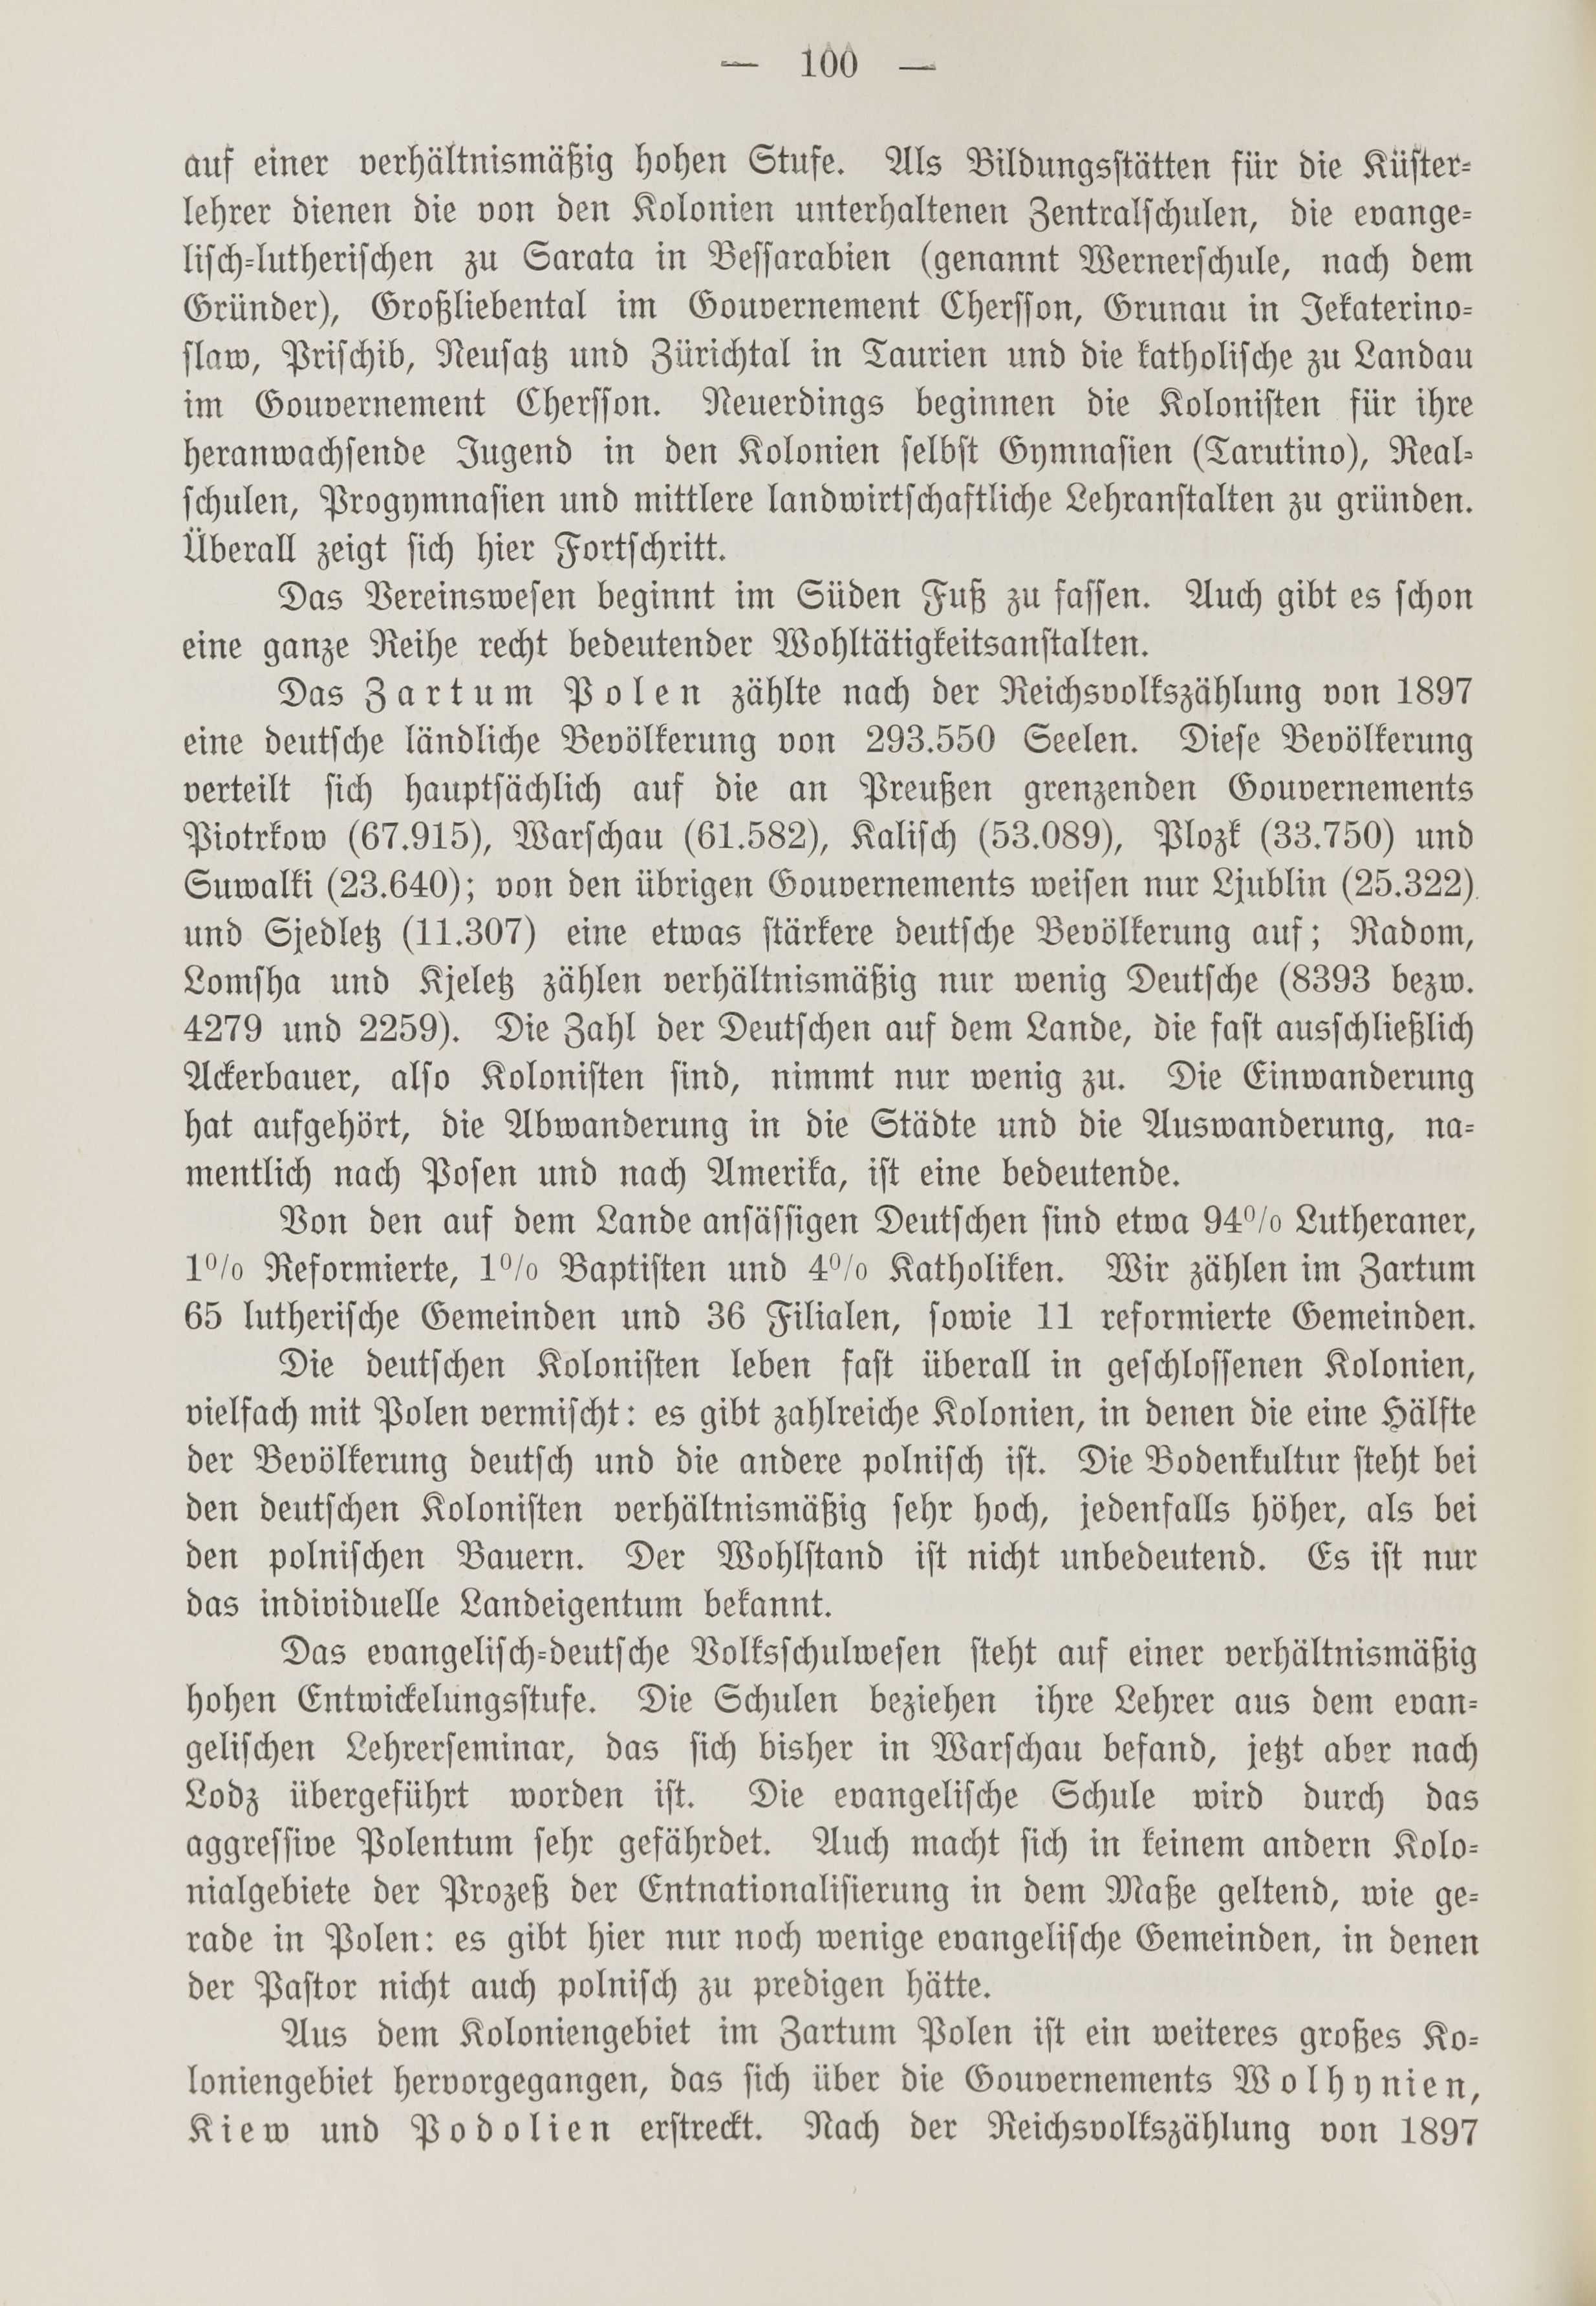 Deutsche Monatsschrift für Russland [1] (1912) | 108. (100) Põhitekst